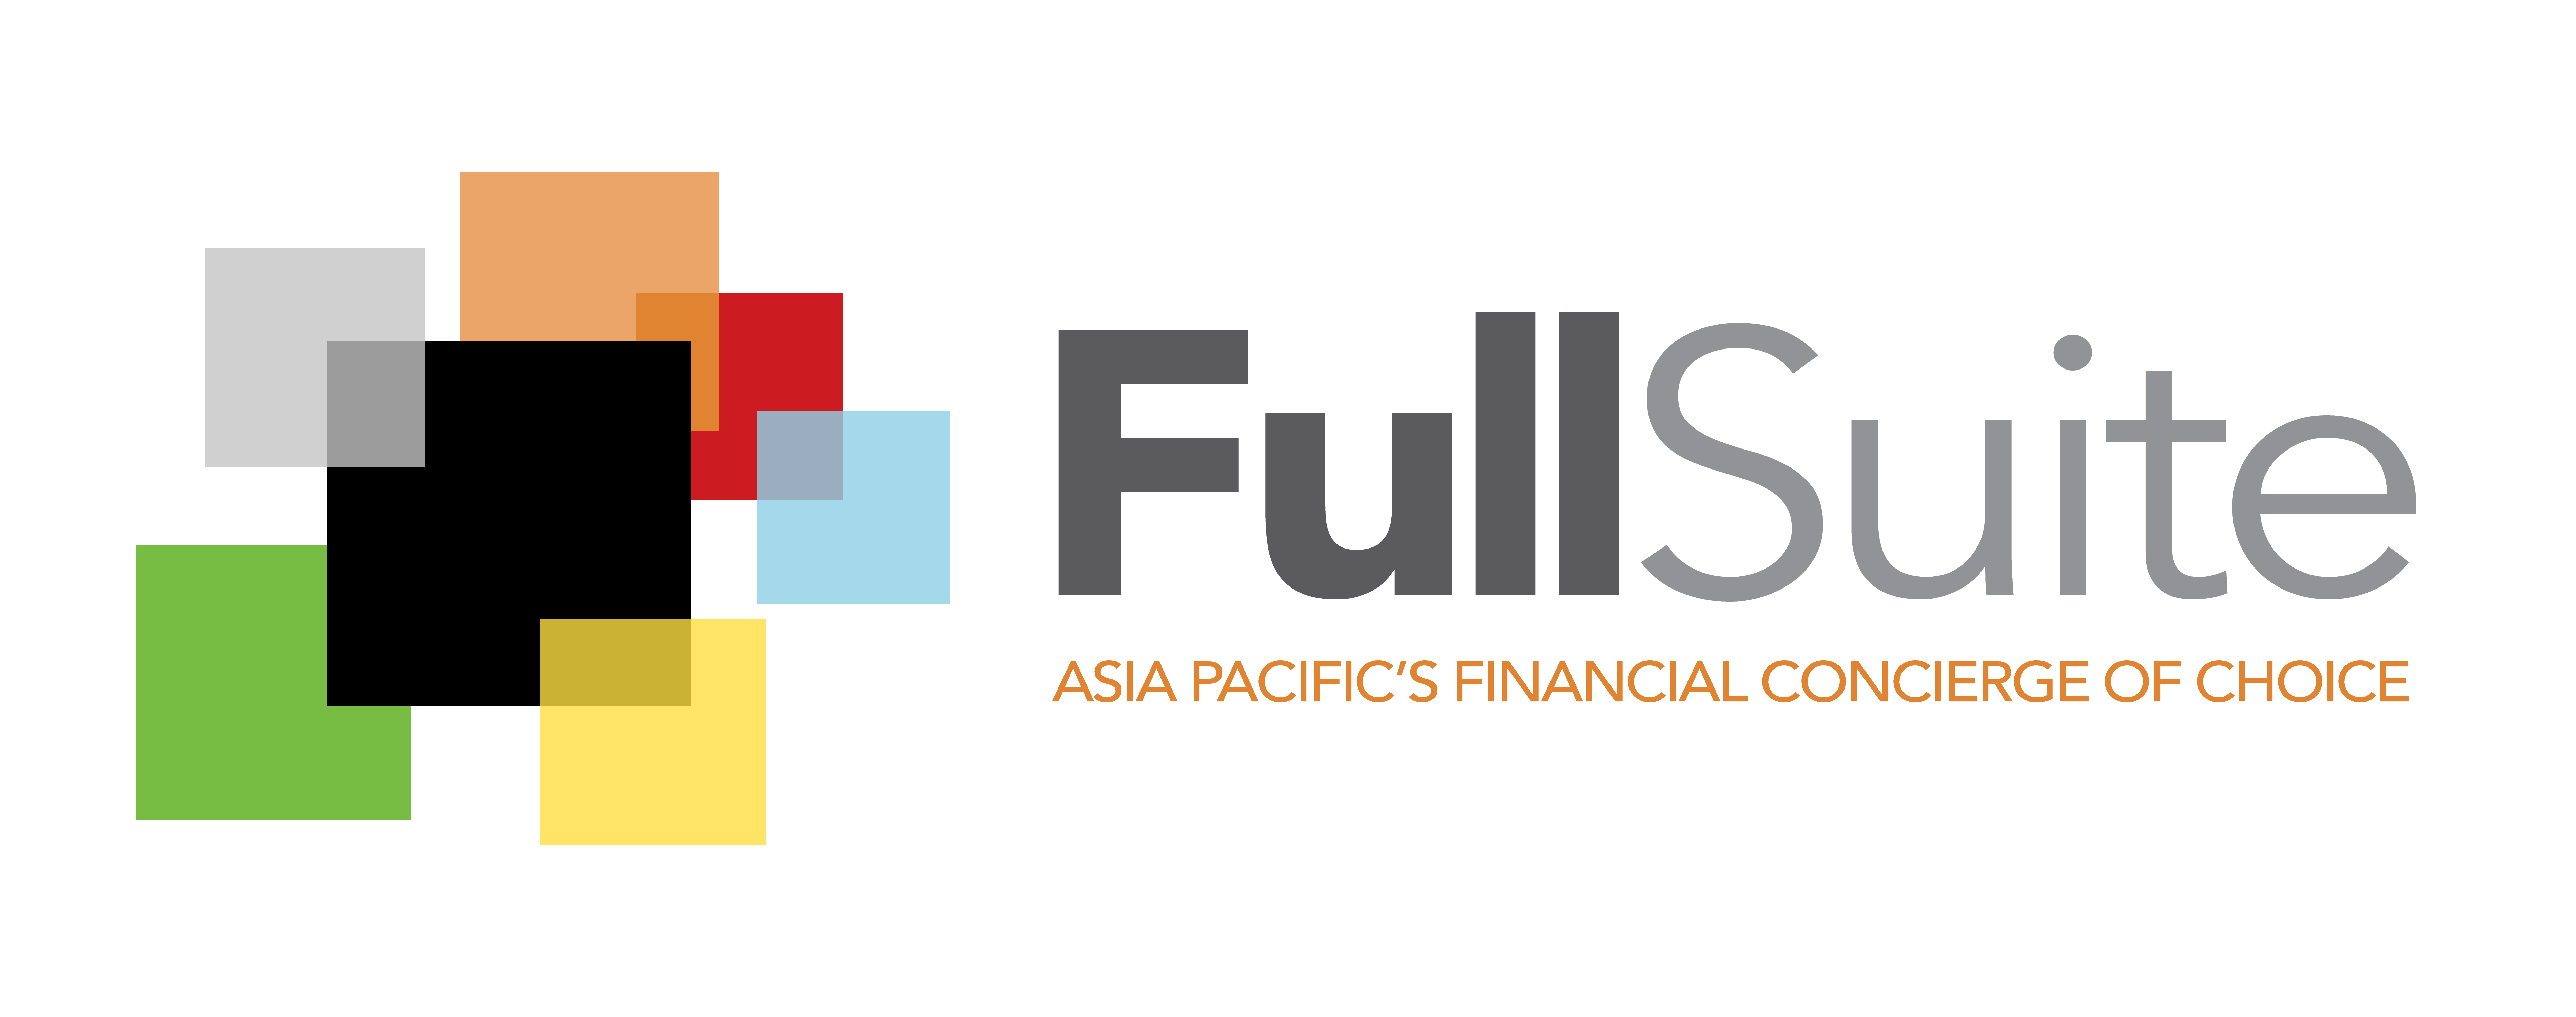 FullSuite